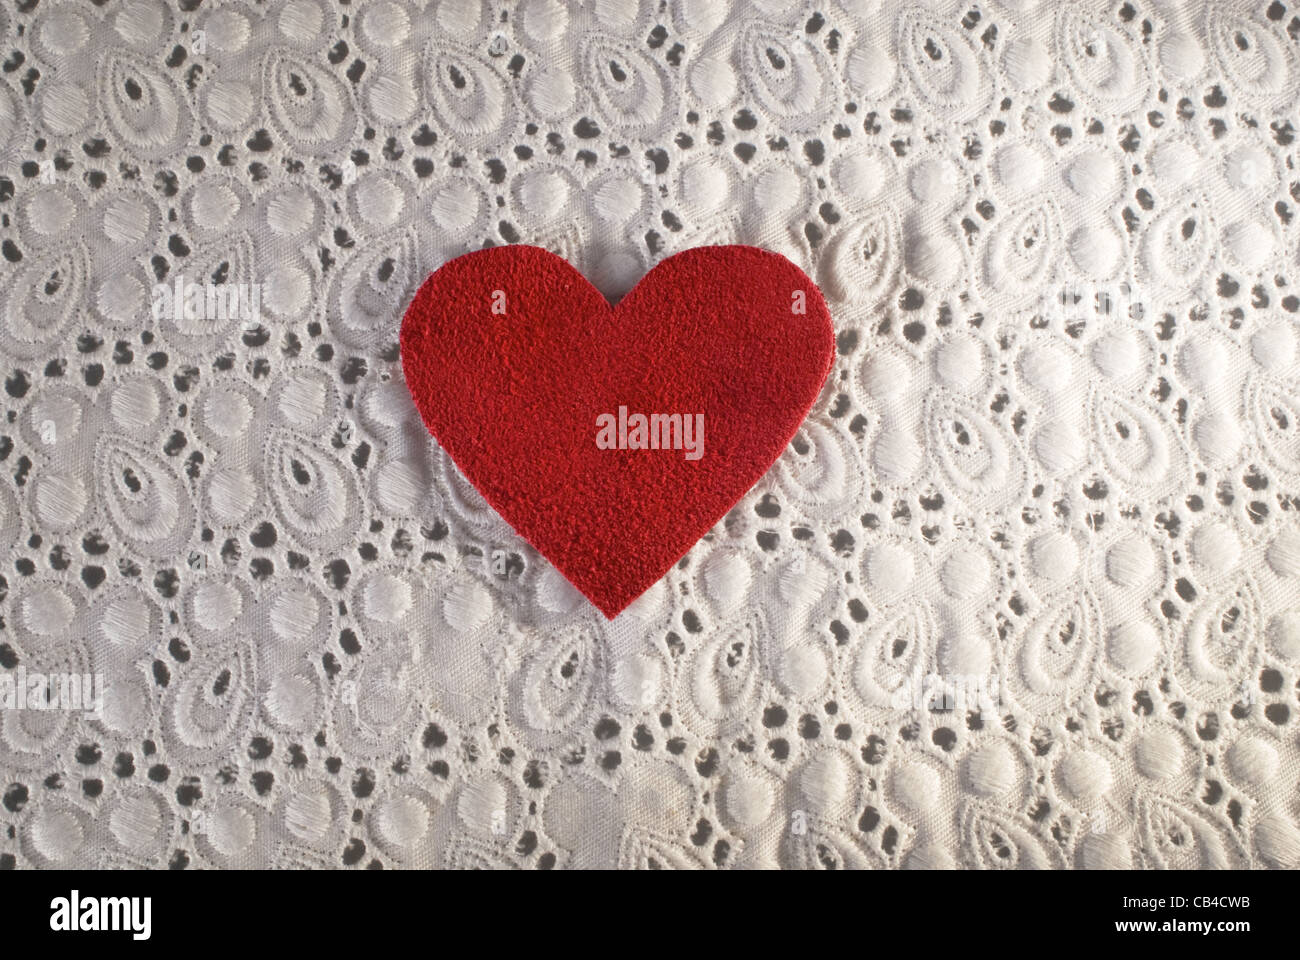 Retrò Amore. Tessuto bianco e rosso forma di cuore composizione concettuale. Tessitura Macro close up utili come sfondo per la progettazione di opere. Foto Stock